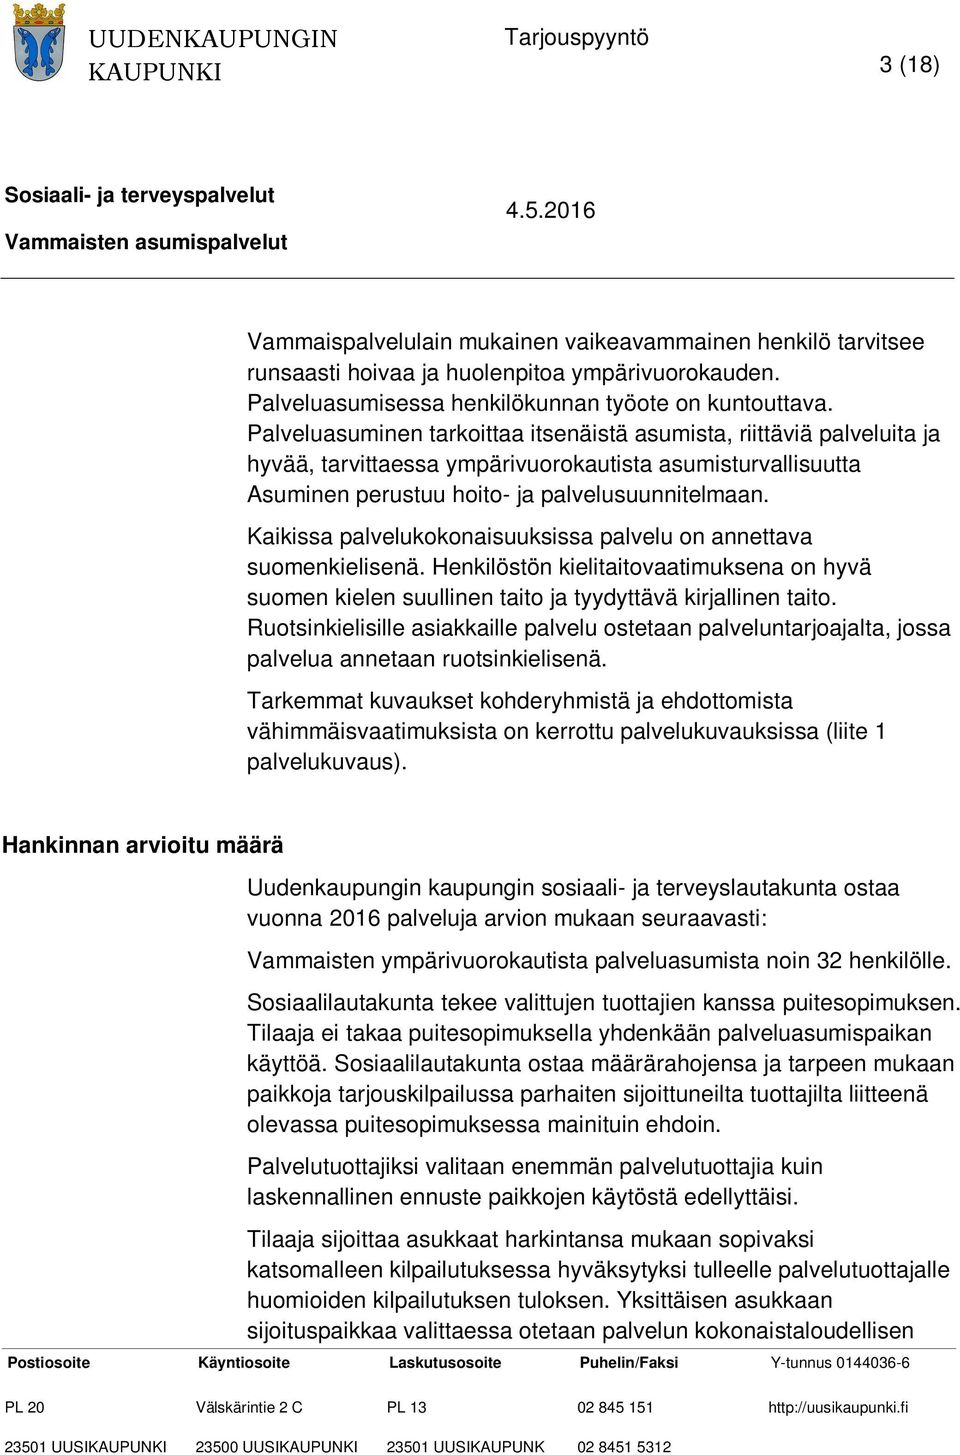 Kaikissa palvelukokonaisuuksissa palvelu on annettava suomenkielisenä. Henkilöstön kielitaitovaatimuksena on hyvä suomen kielen suullinen taito ja tyydyttävä kirjallinen taito.